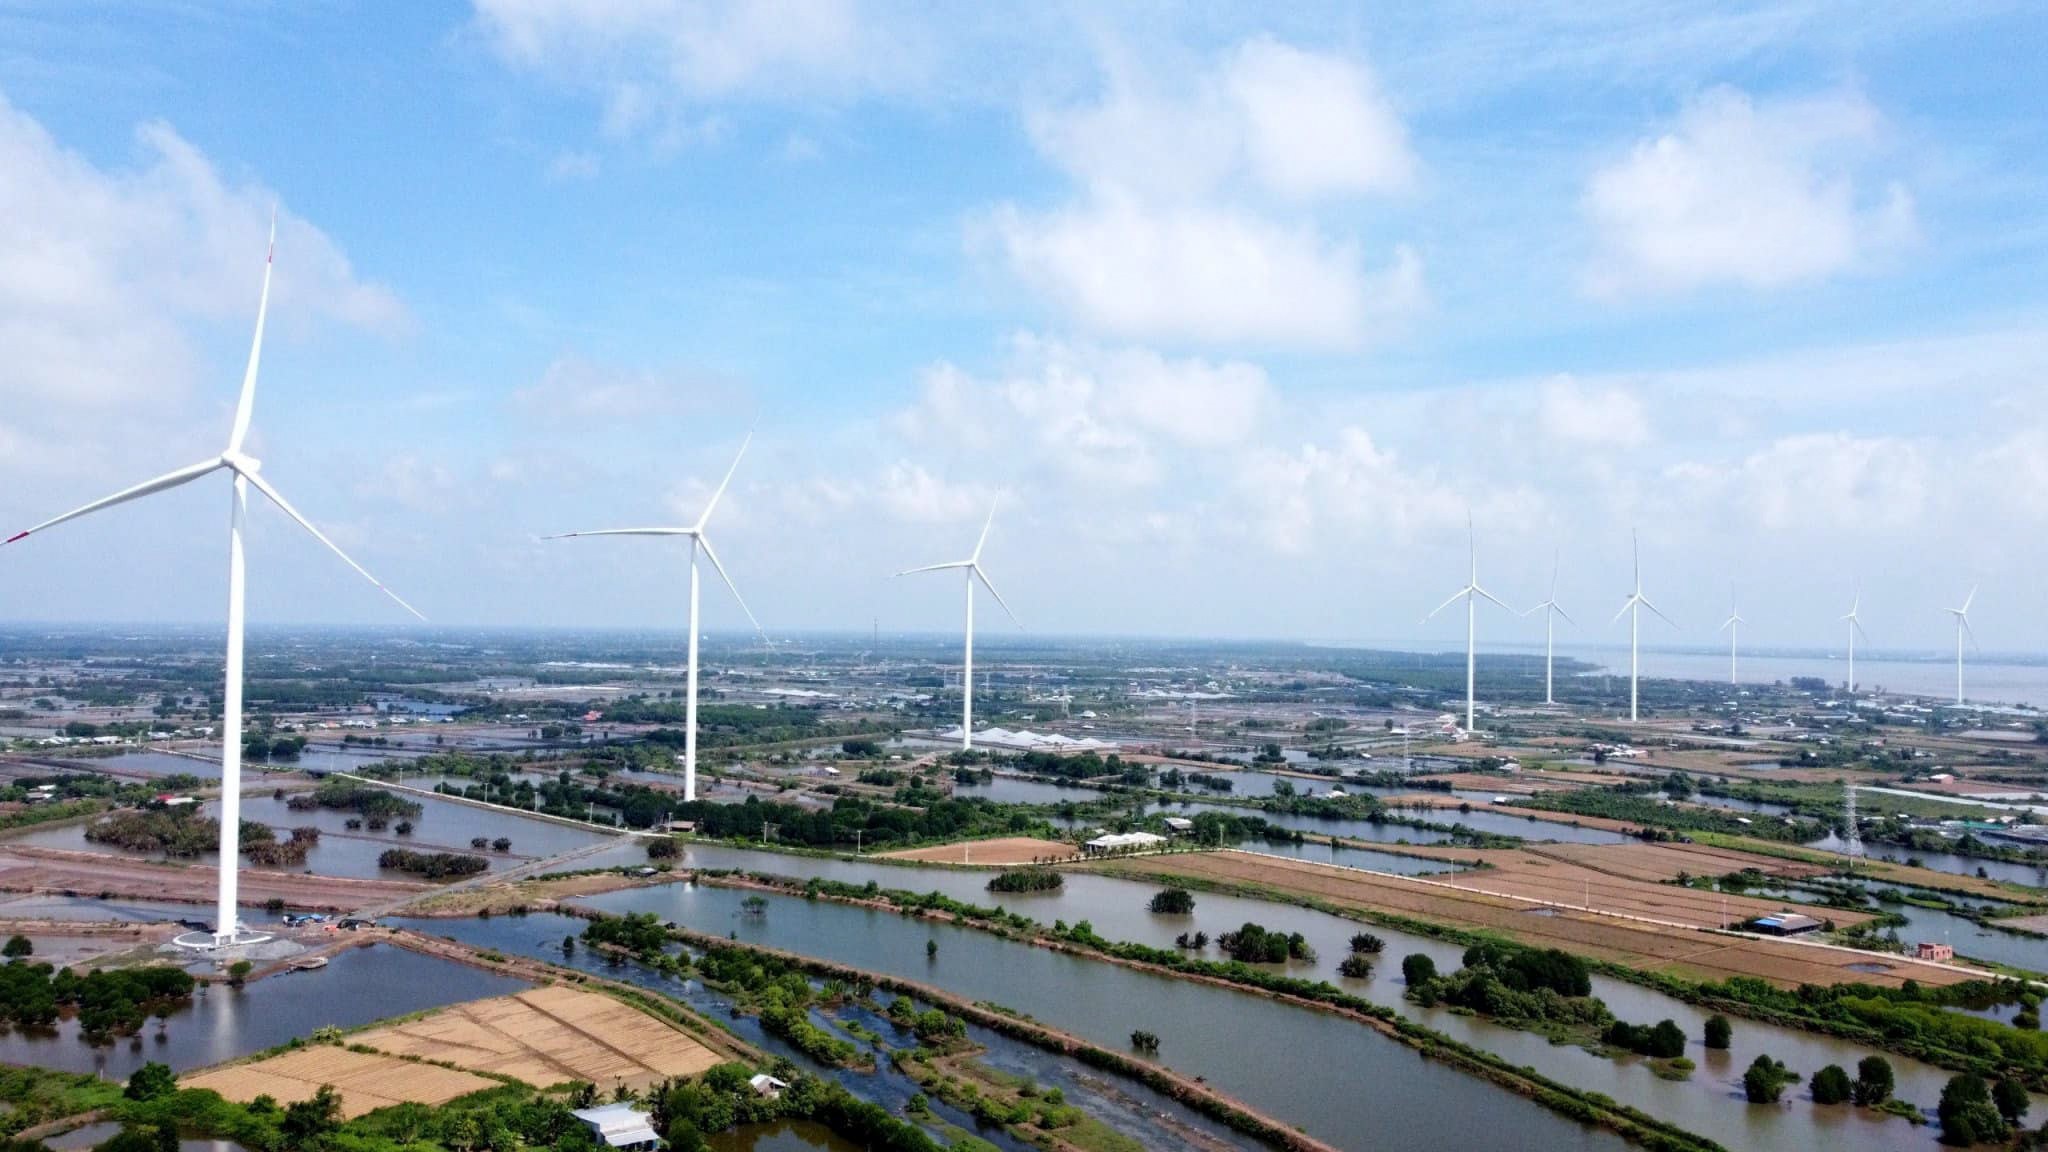 Nhà máy Điện gió Thanh Phong giai đoạn 1 là dự án năng lượng tái tạo chuyển tiếp thứ 21 hoàn thành thủ tục COD, có công suất 29,7 MW, đặt tại Thạnh Phú, Bến Tre